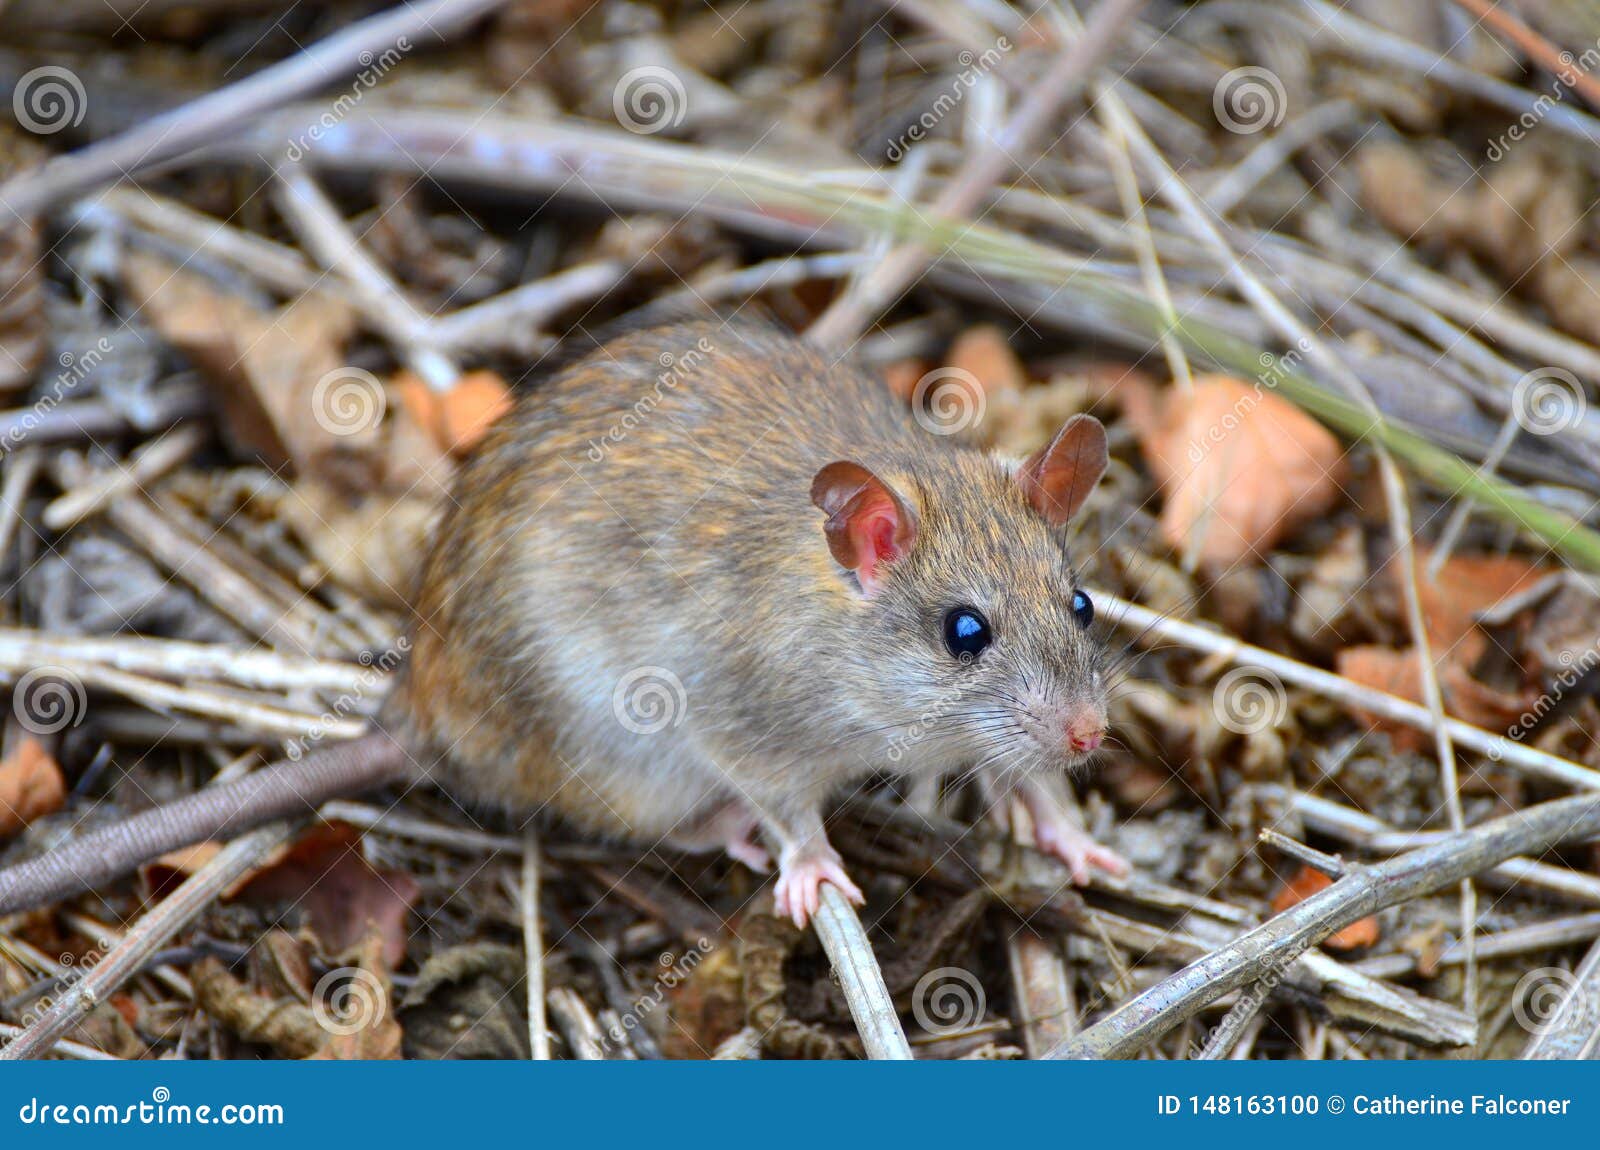 invasive rat on isla de la plata, ecuador